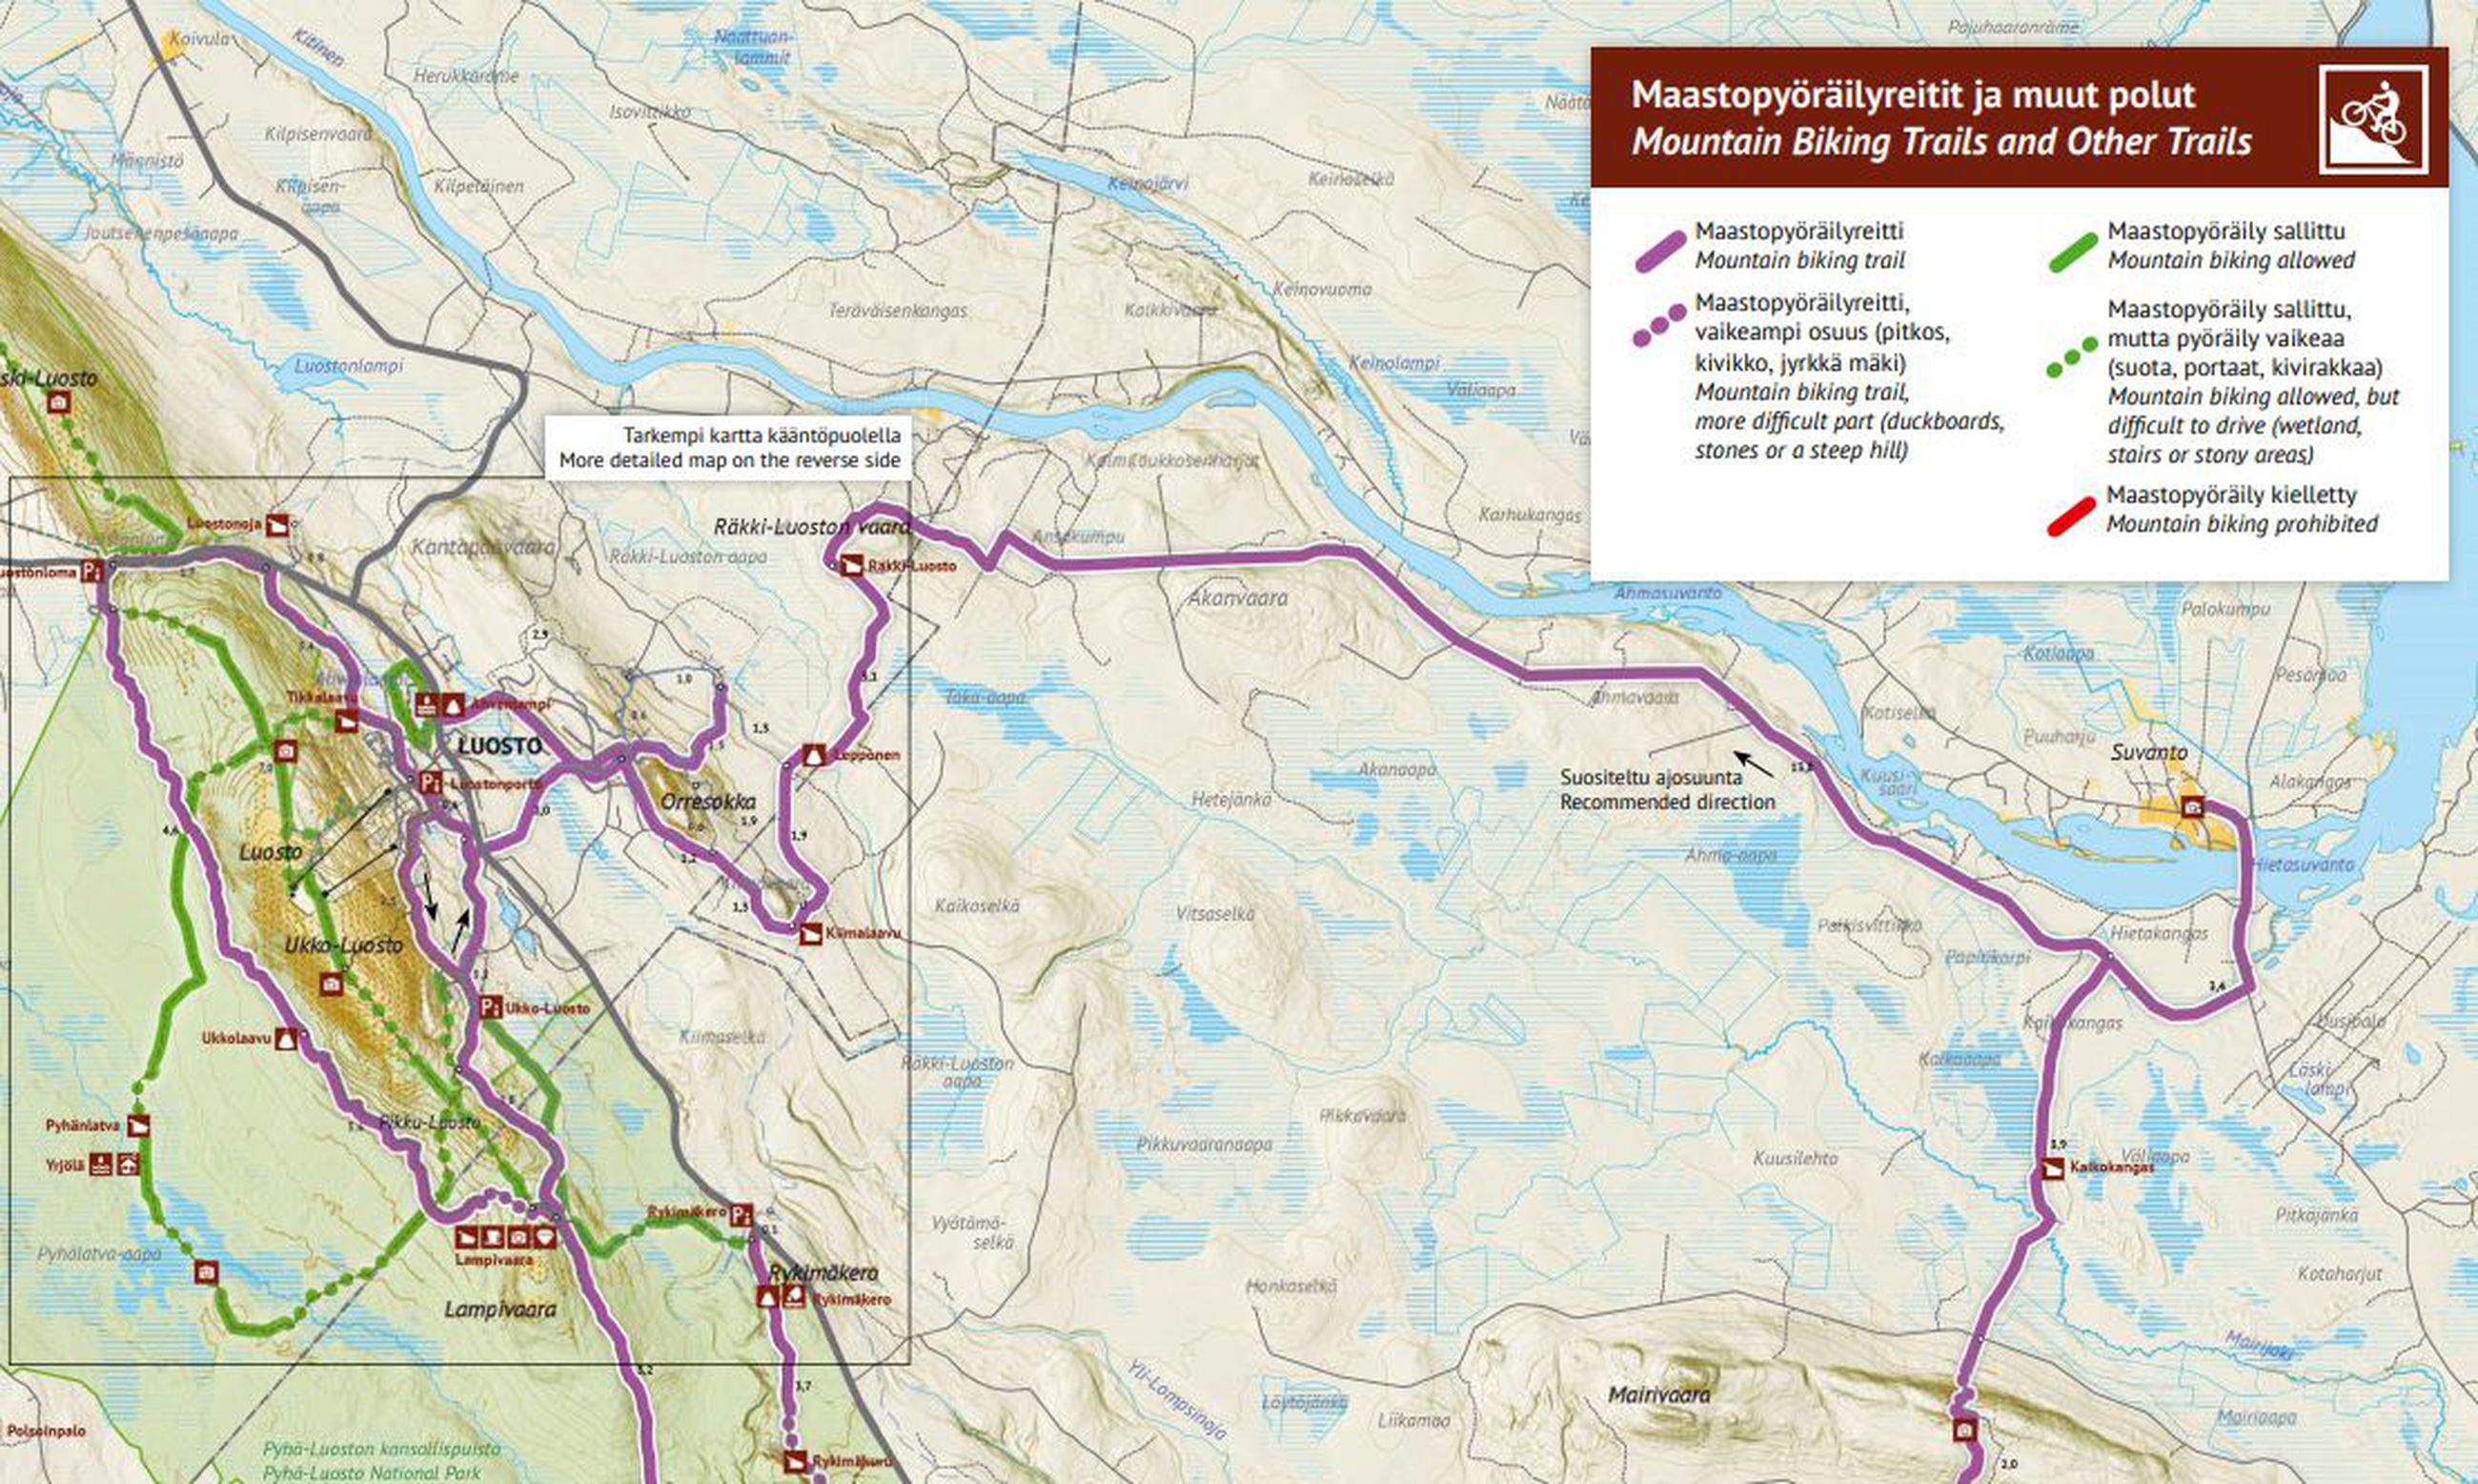 luosto kartta Pyhä Luoston kansallispuiston maastopyöräkartta on valmistunut 